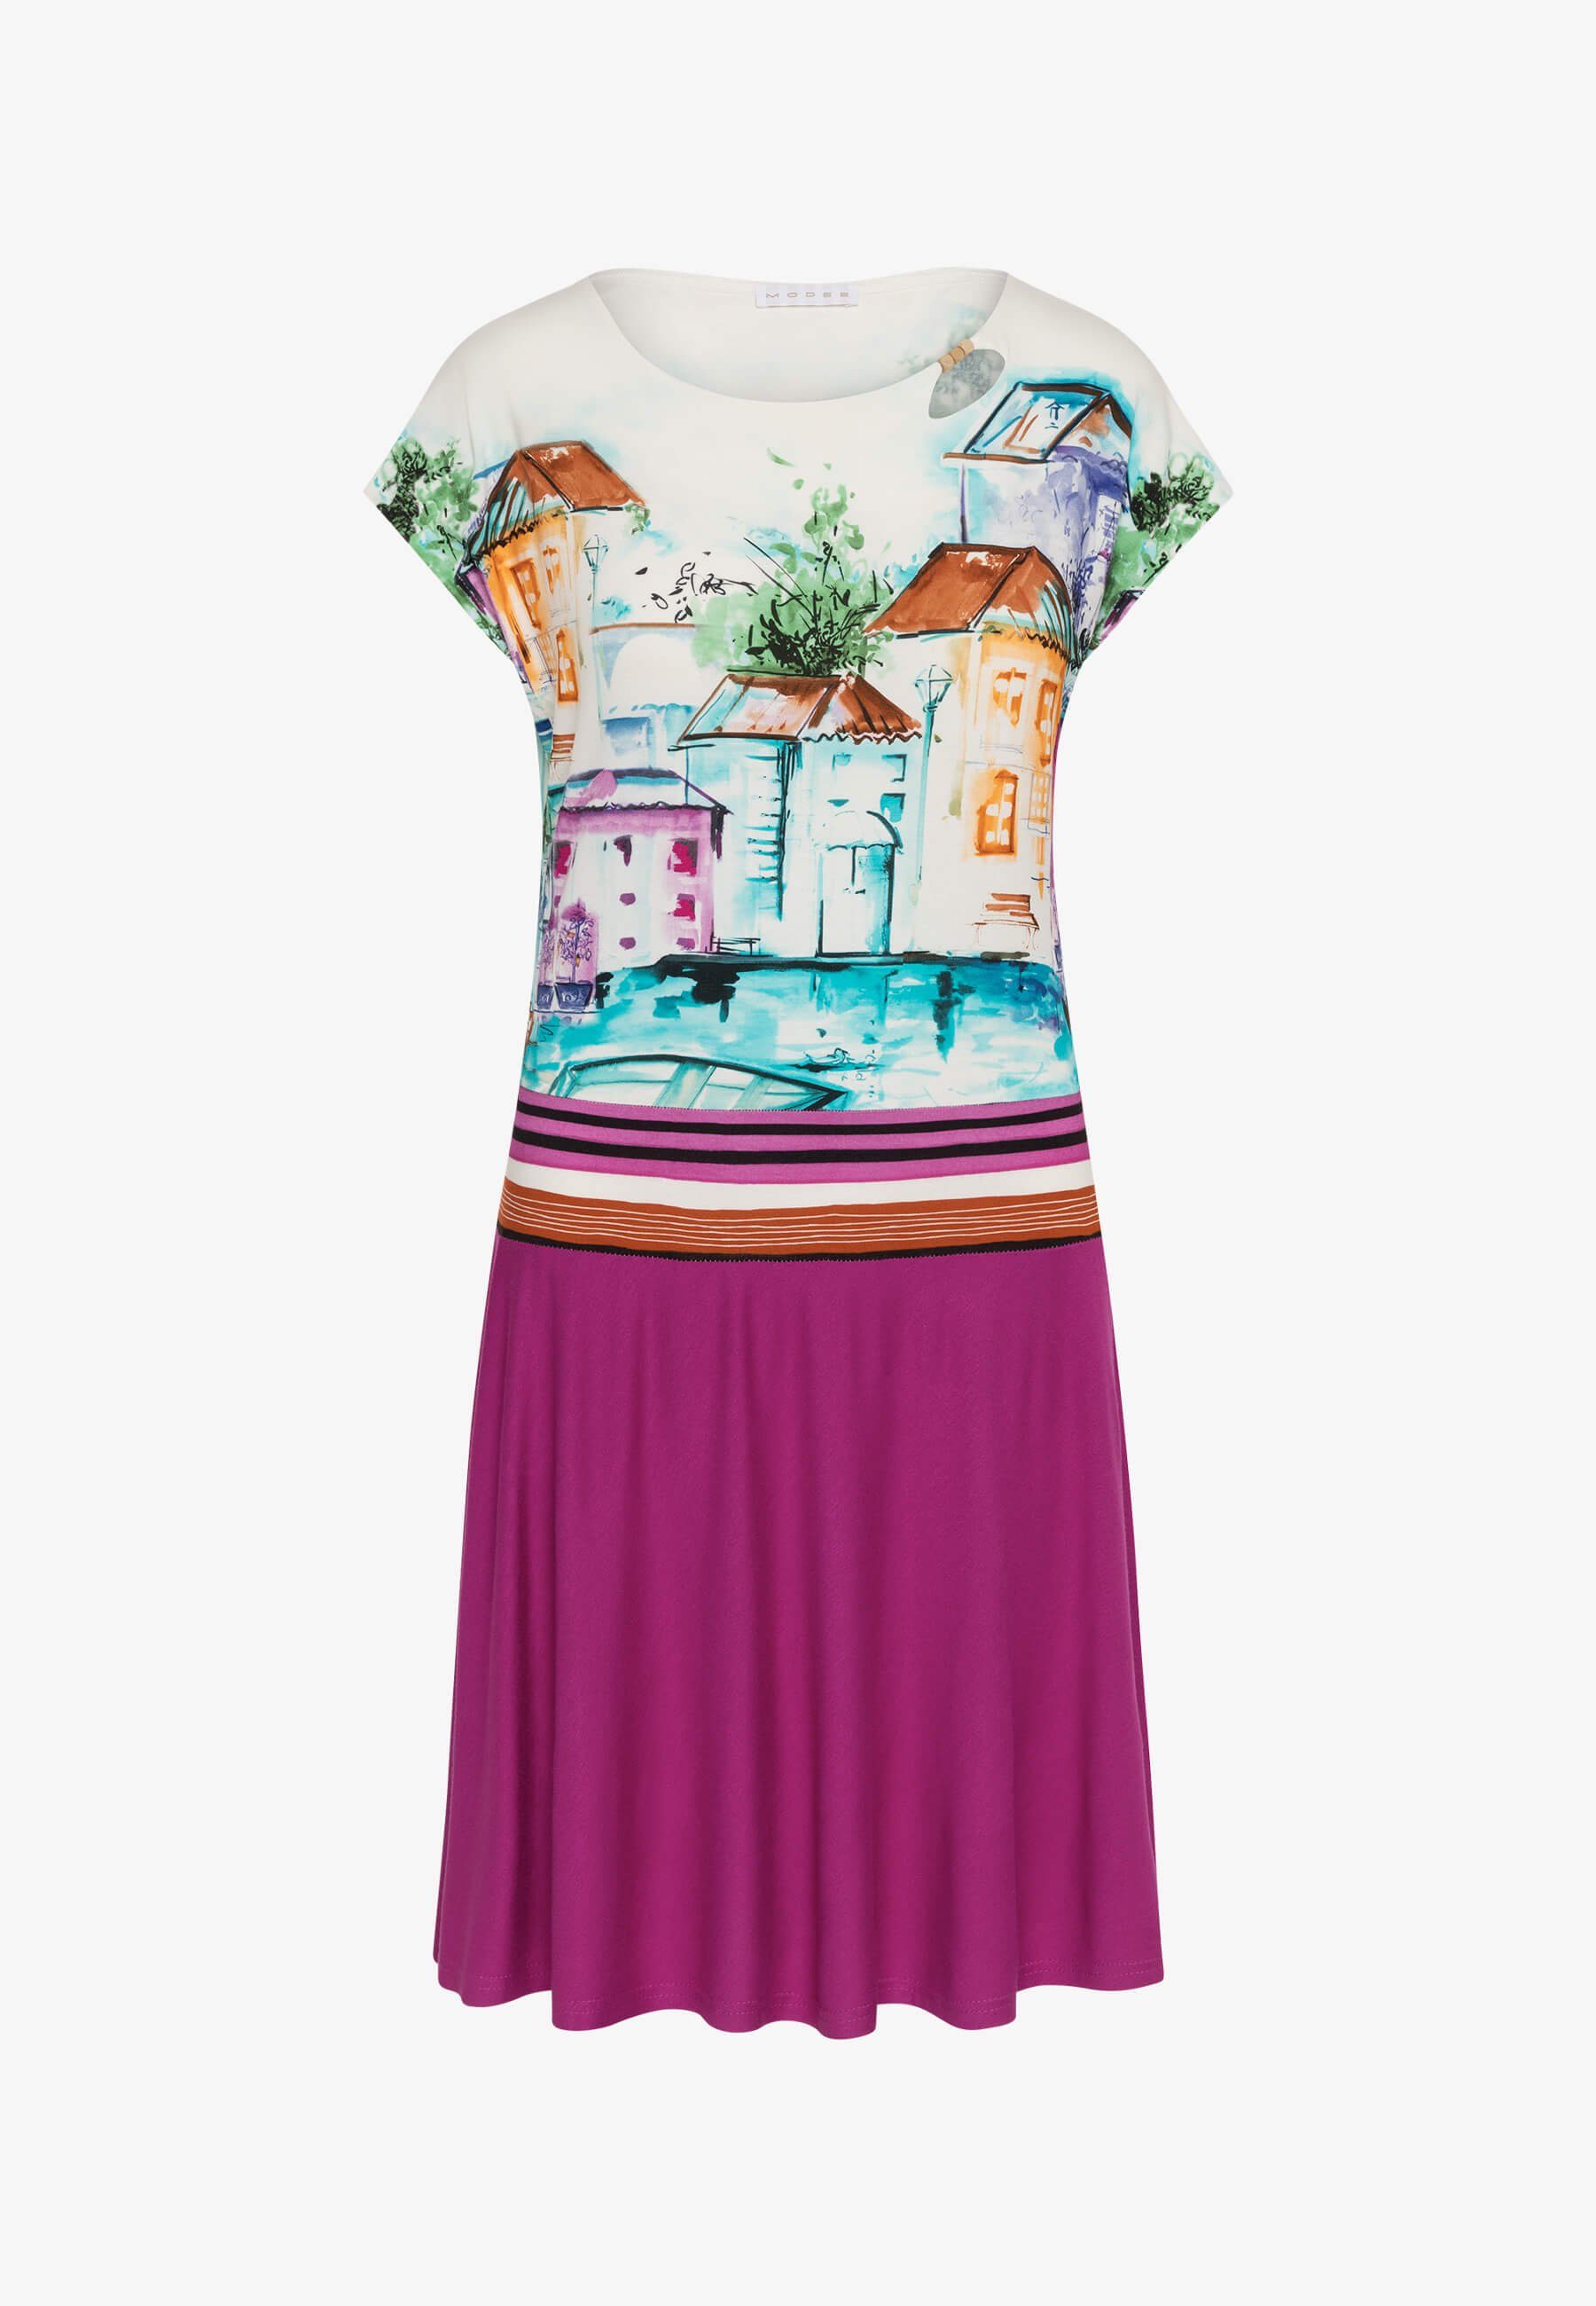 MODEE Sommerkleid mit farbenfrohen Häuserprint in femininer, leicht fallender Optik italienischer Haus/Boote-Print Fuchsia Druck